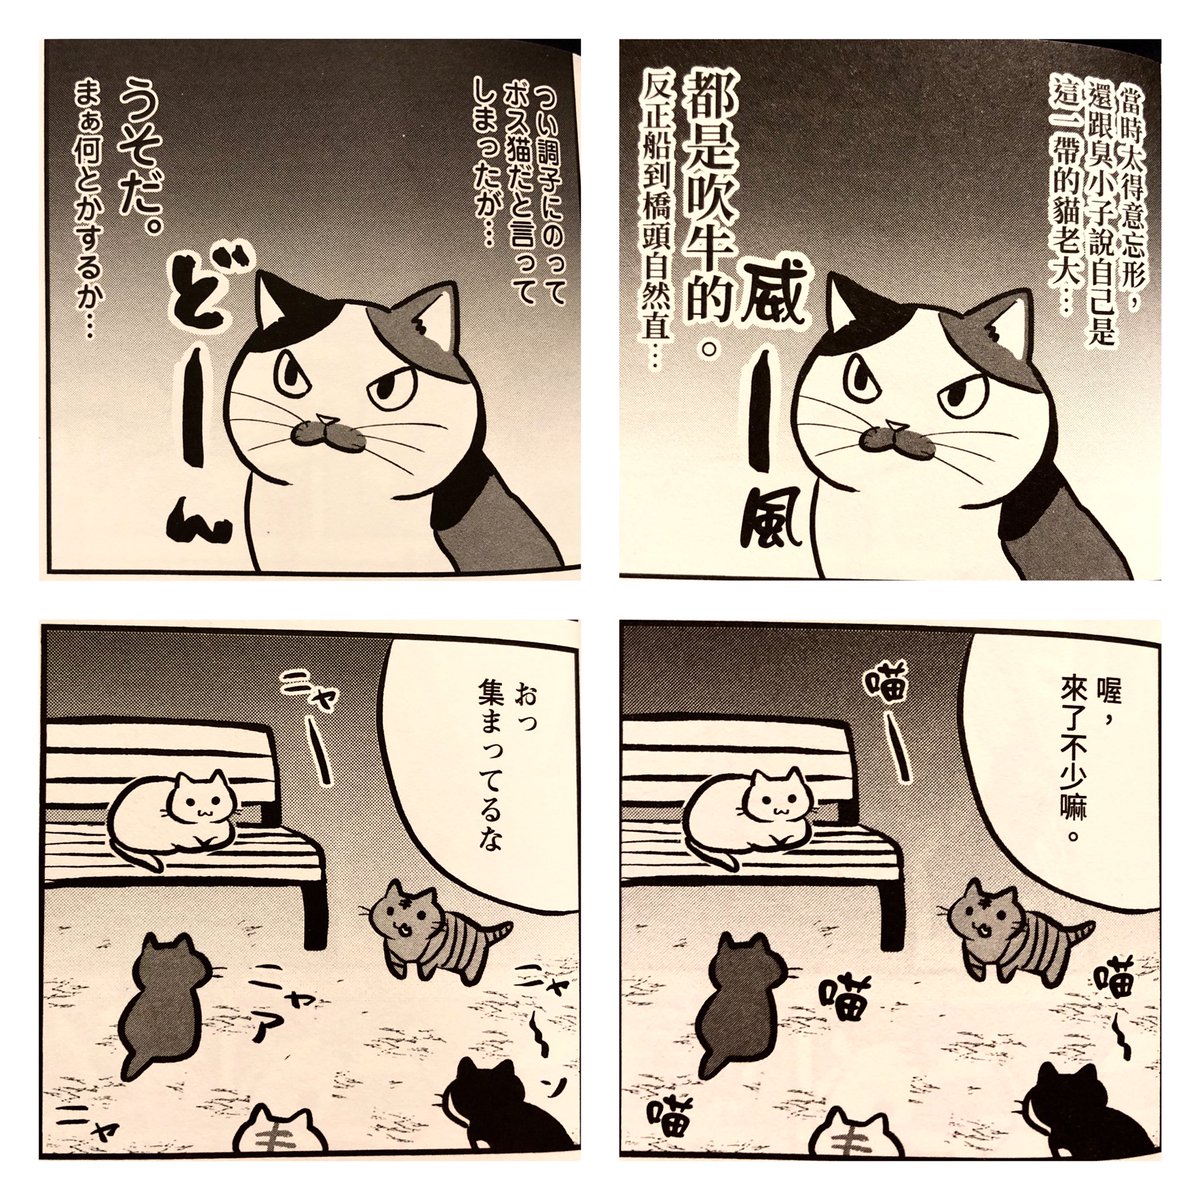 お気に入りポイント
我が家の猫たちが台湾語の名前になってたこと。あと解釈できる効果音
威ー風…(笑) 